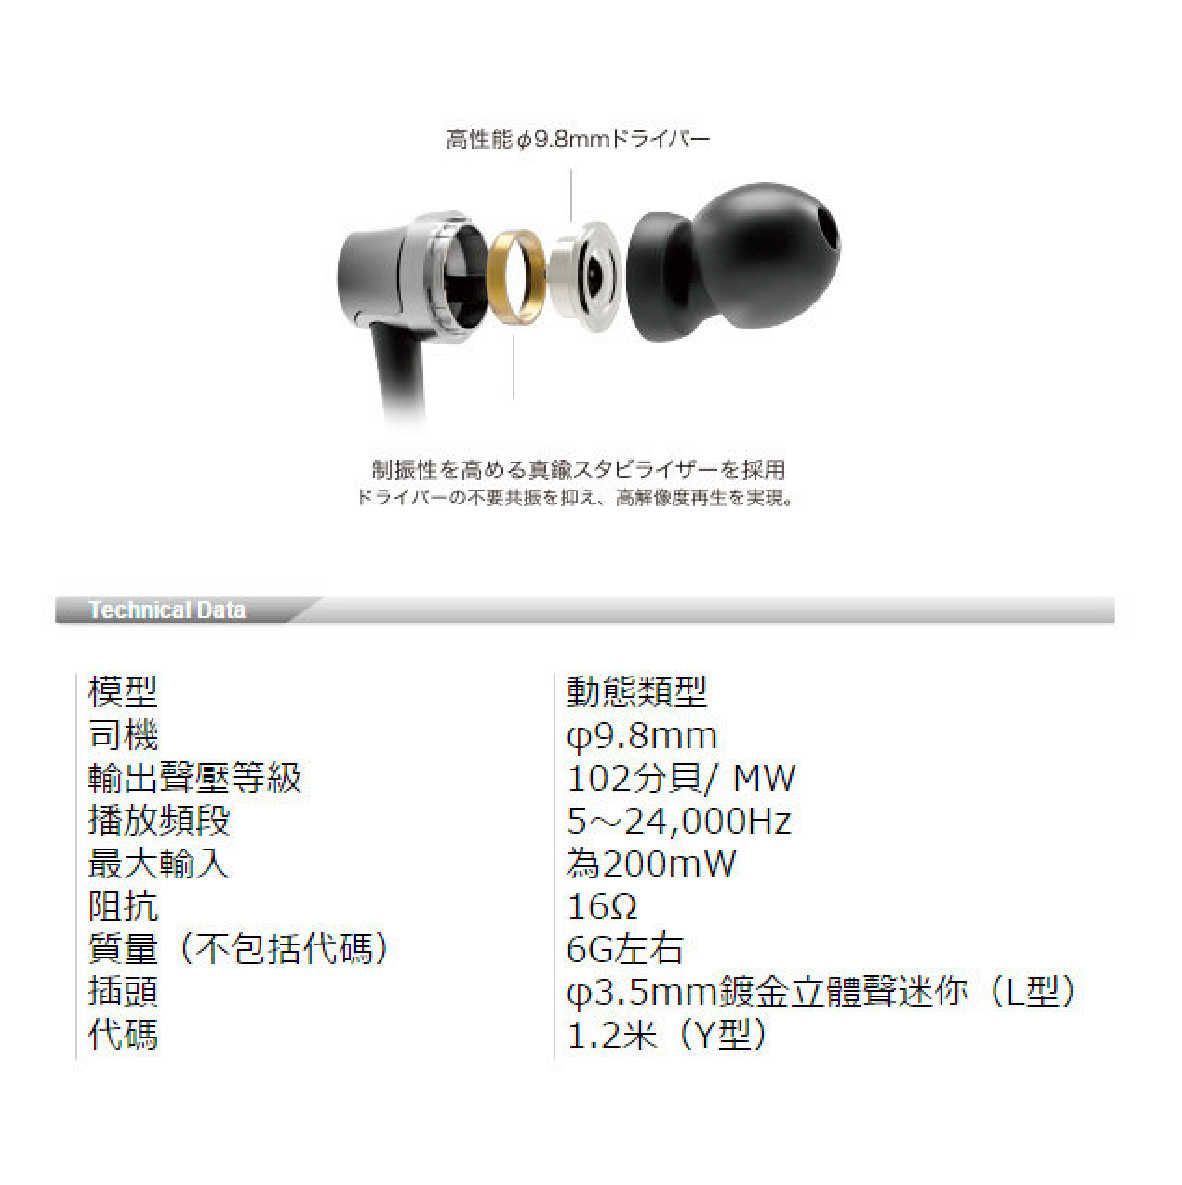 鐵三角 ATH-CKR30 黃色 耳道式 耳機| My Ear 耳機專門店